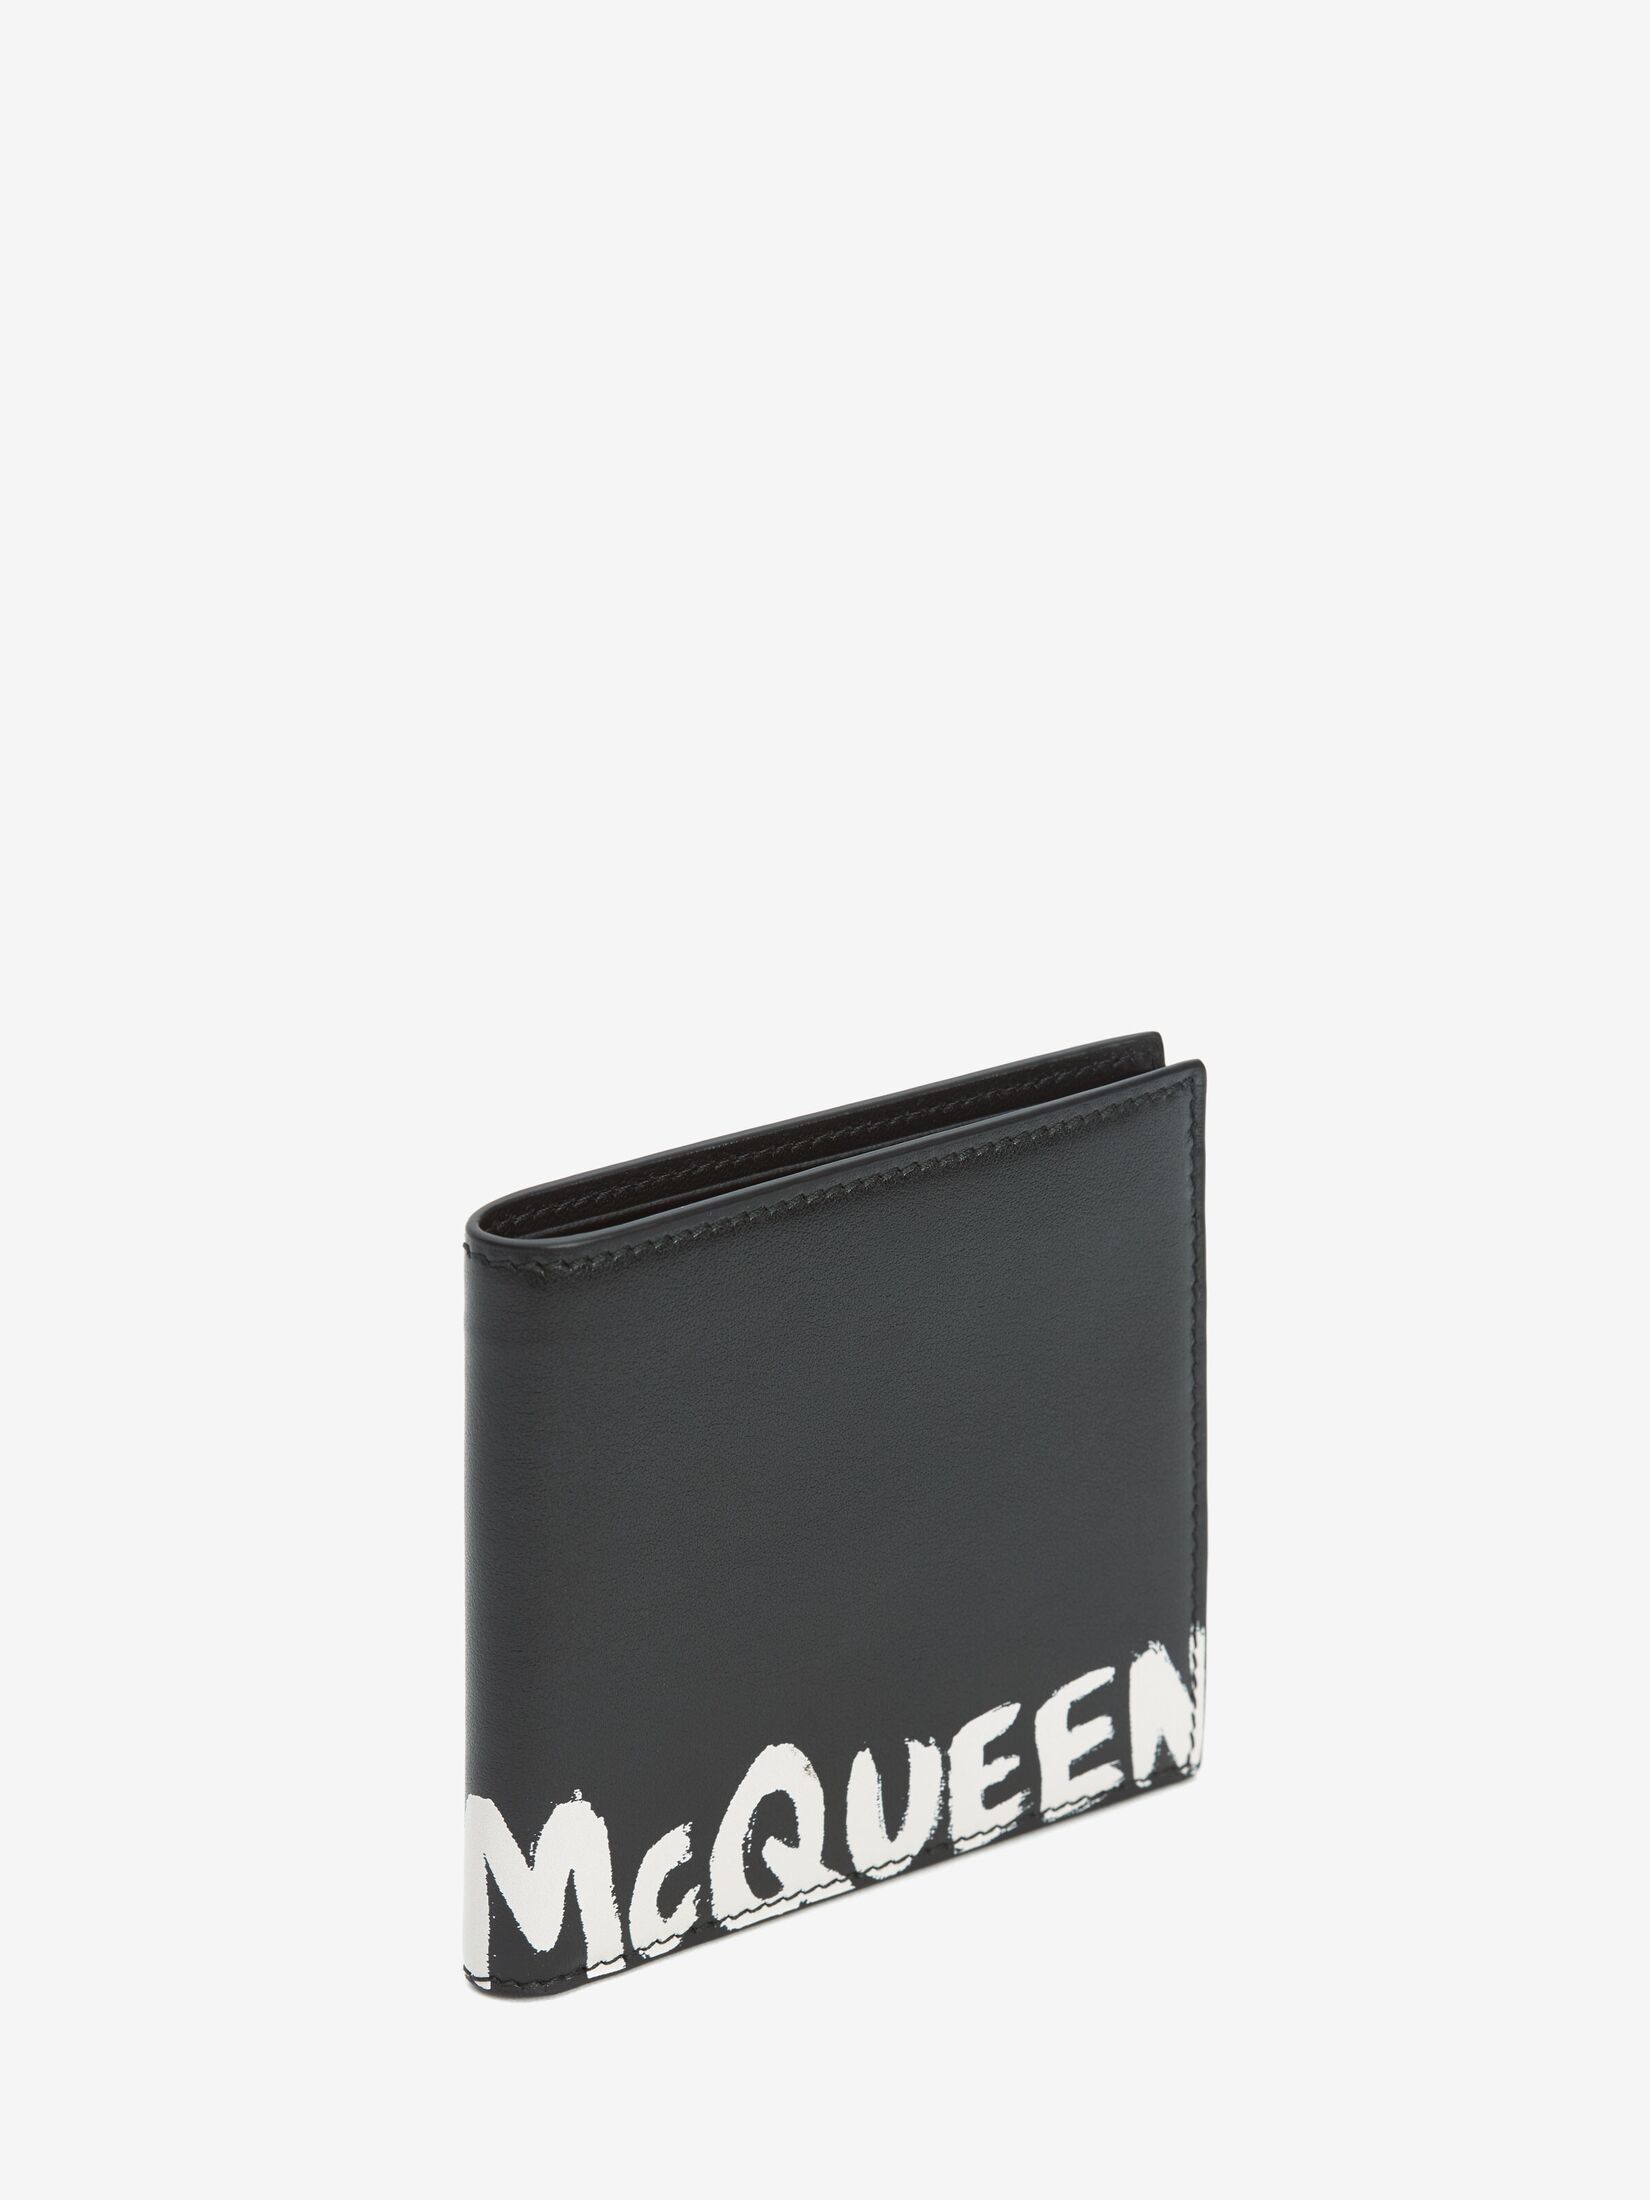 Brieftasche mit McQueen-Logo als Graffiti